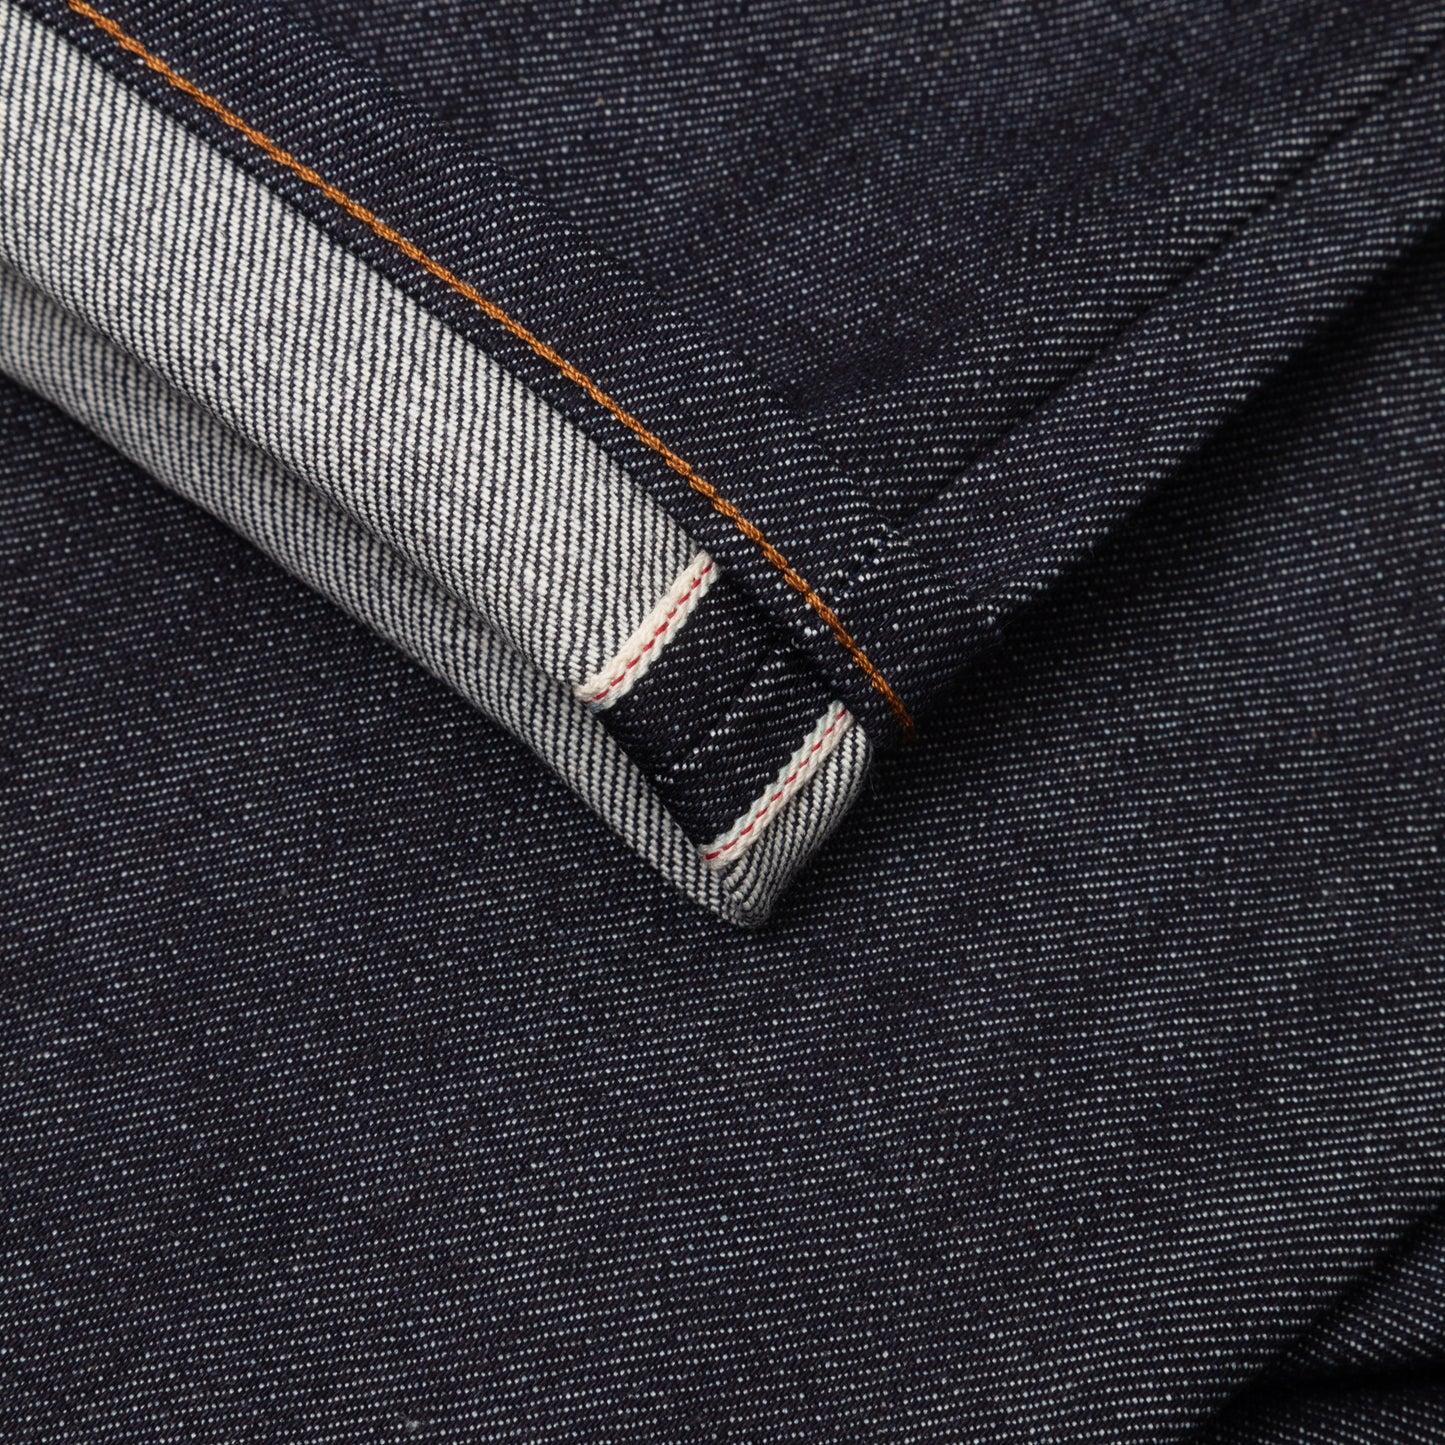 lisiere rouge jeans selvedge japonais et point de chainette réalisé avec une machine union special 43200g